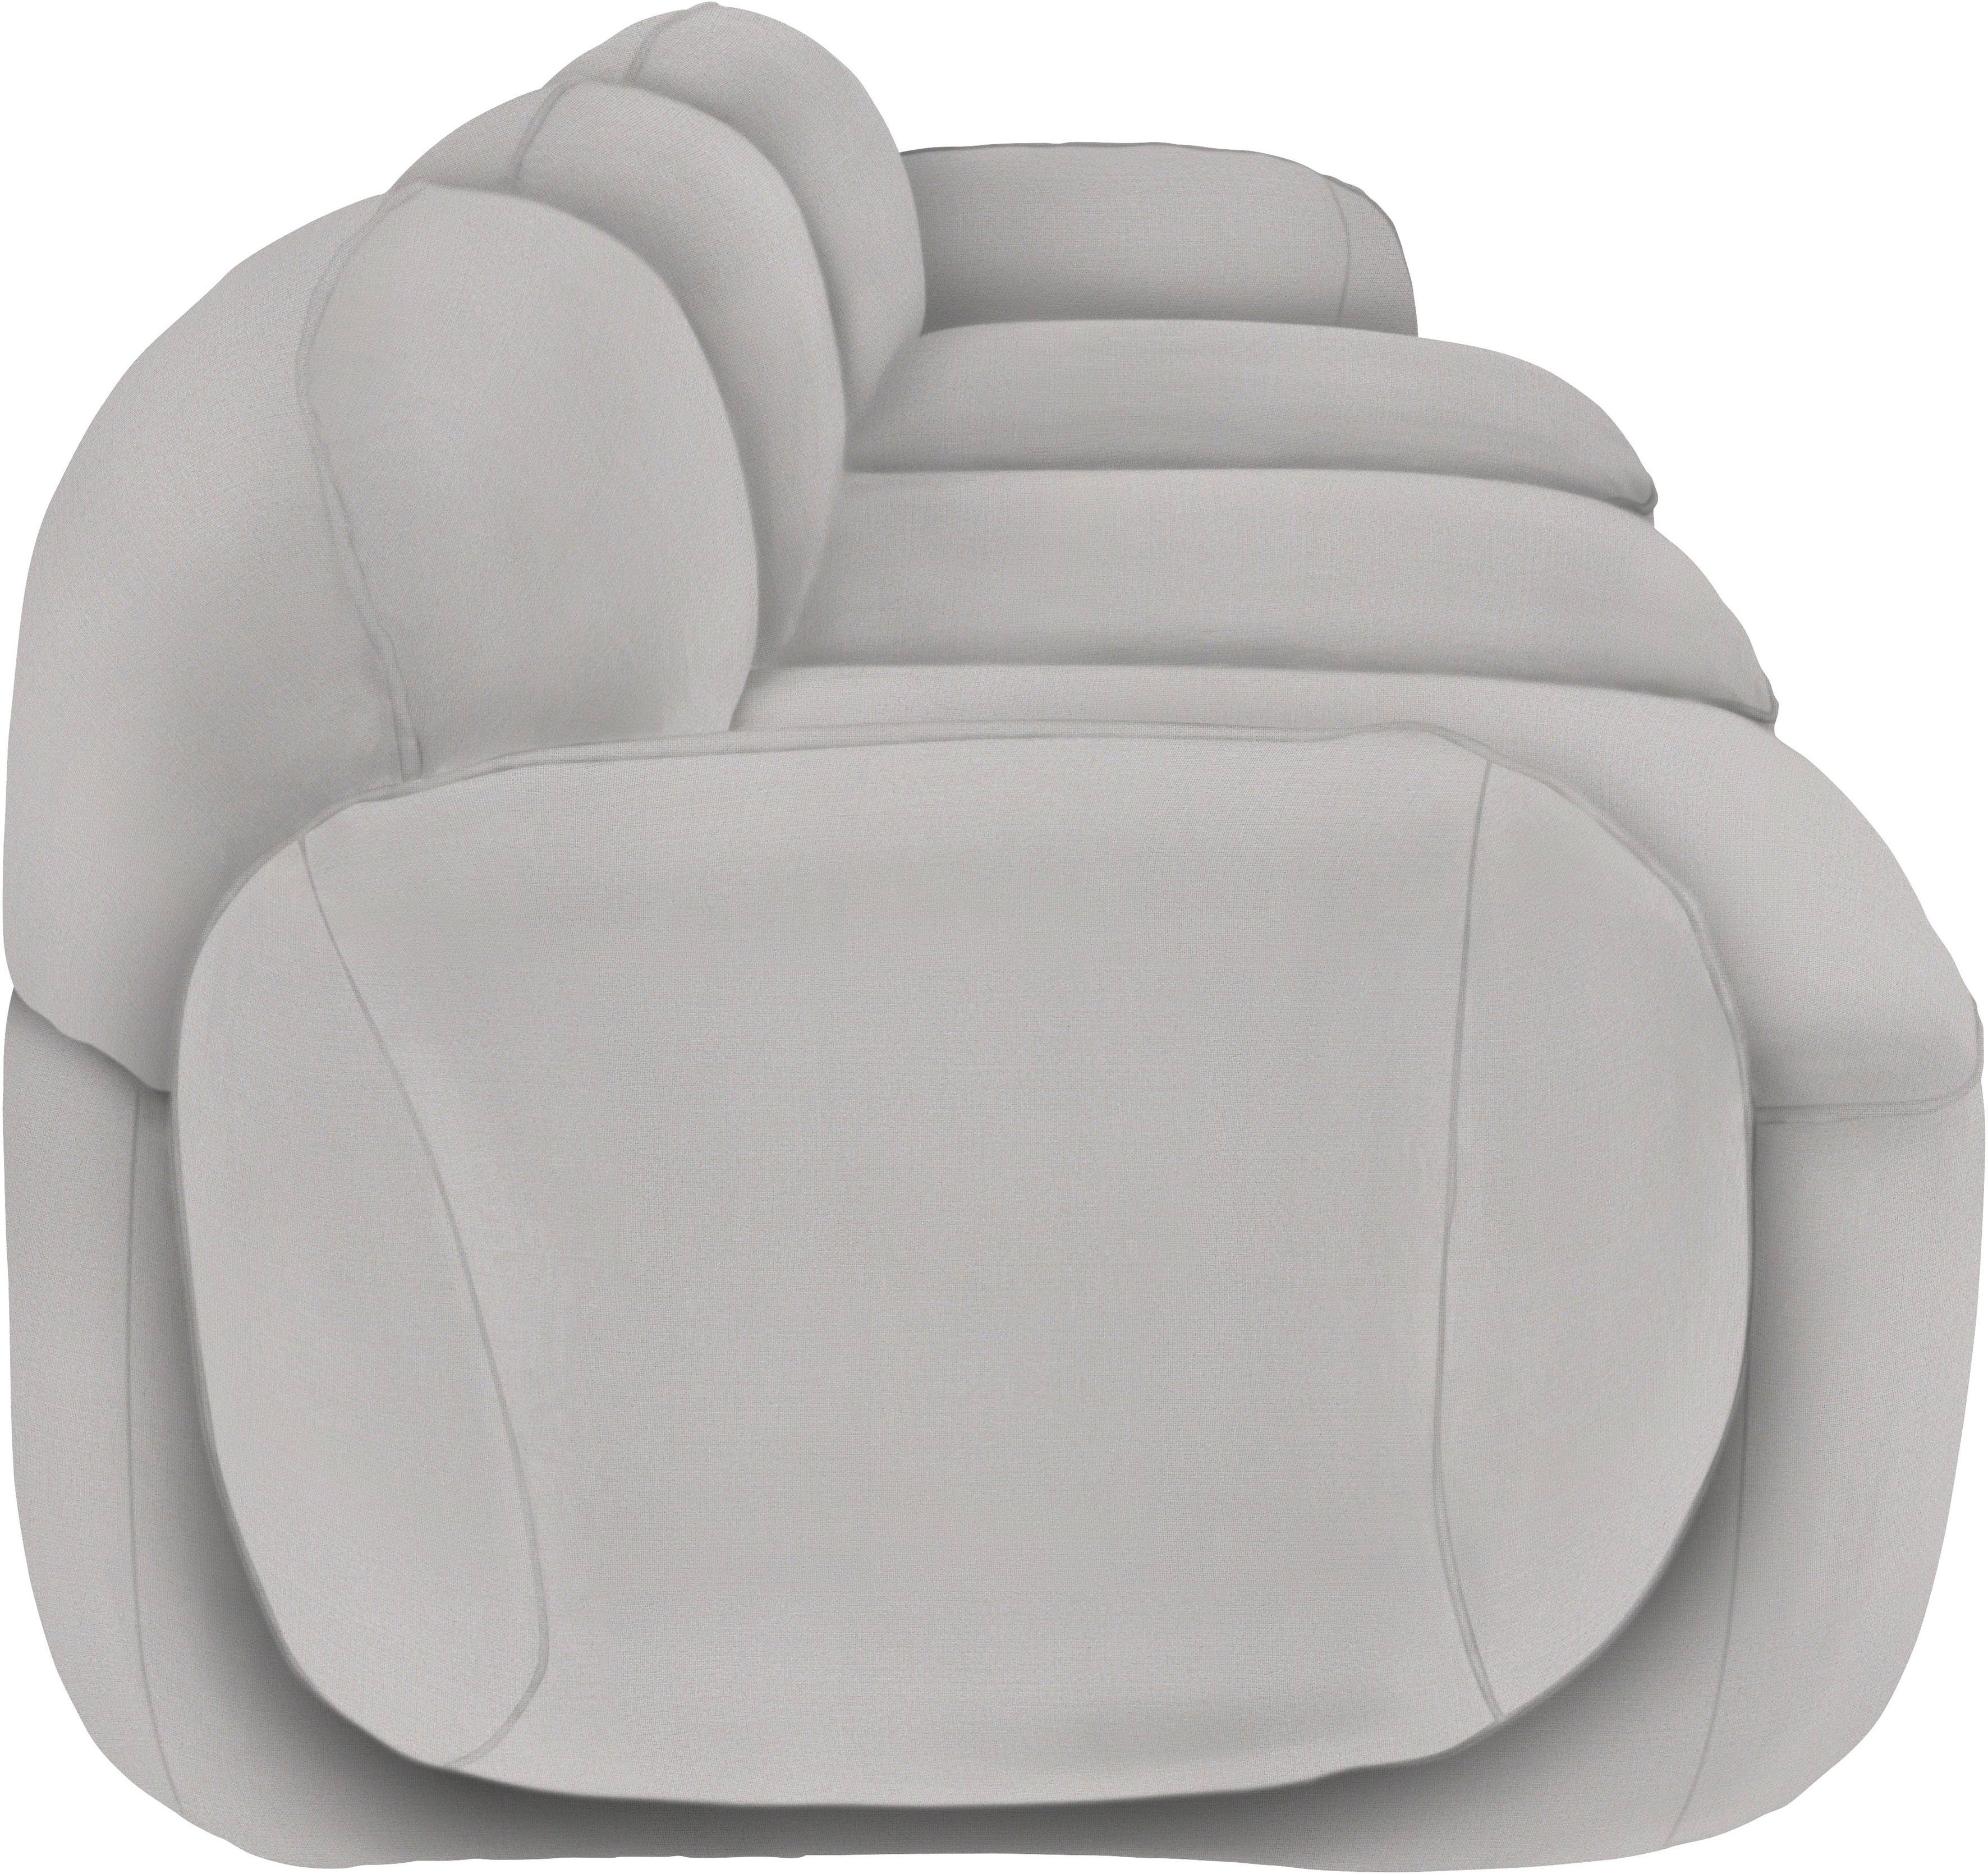 Design Memoryschaum, furninova skandinavischen komfortabel Bubble, 3,5-Sitzer im durch